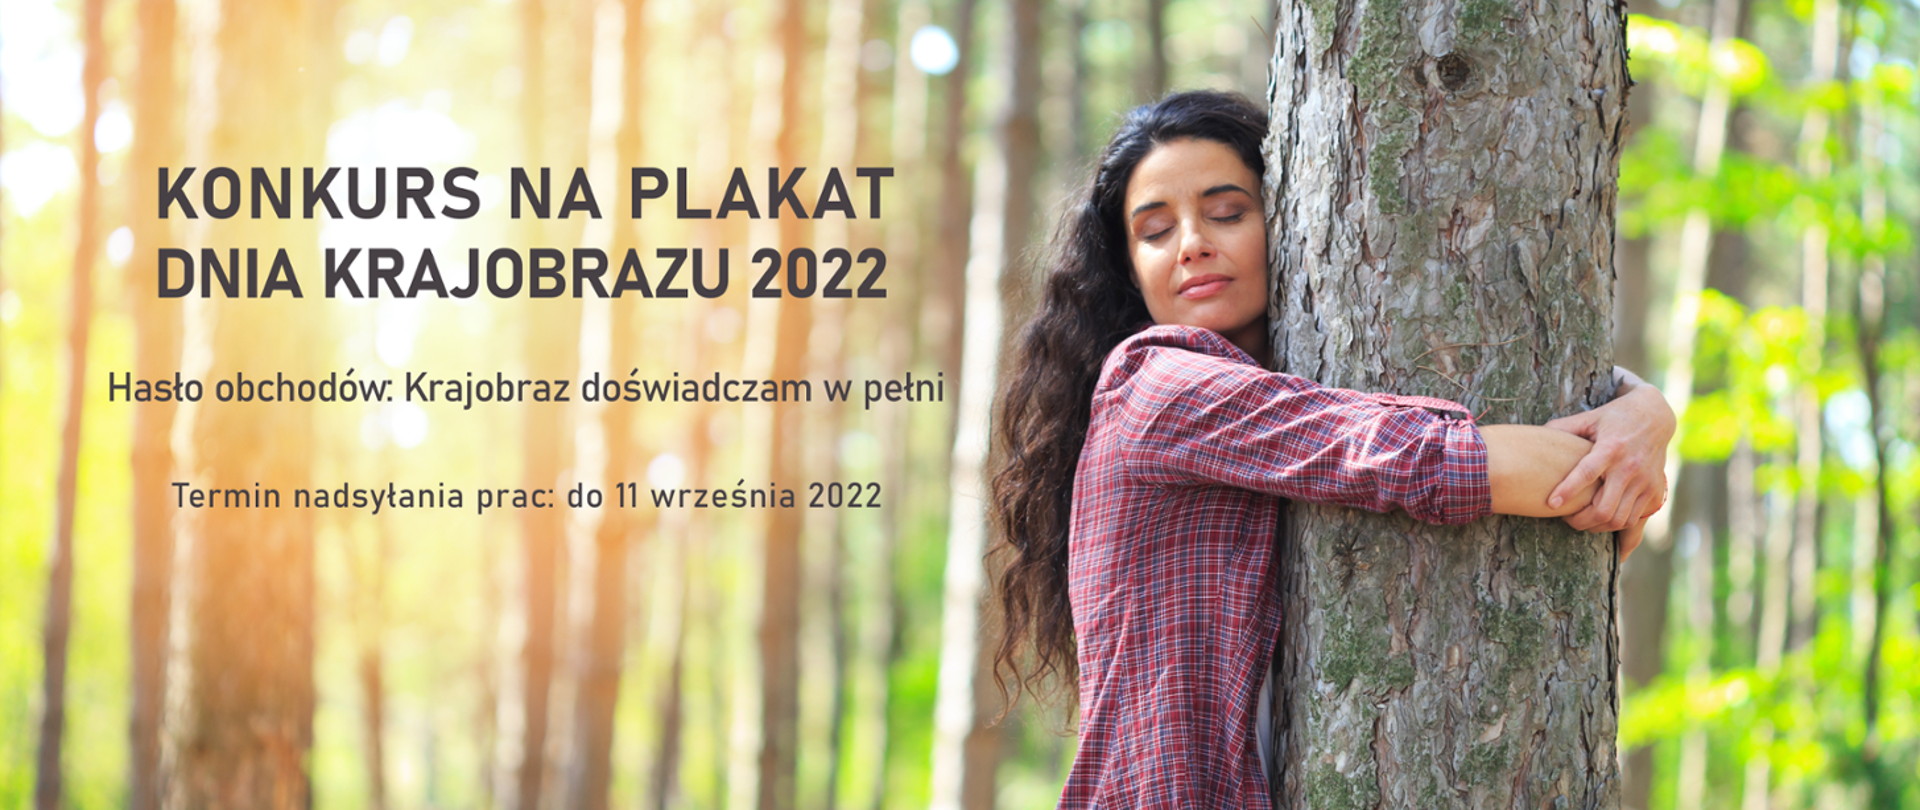 Na pierwszym planie kobieta z długimi włosami obejmuje drzewo. Napis: Konkurs na plakat Dnia Krajobrazu 2022 Hasło obchodów Krajobraz doświadczam w pełni. 